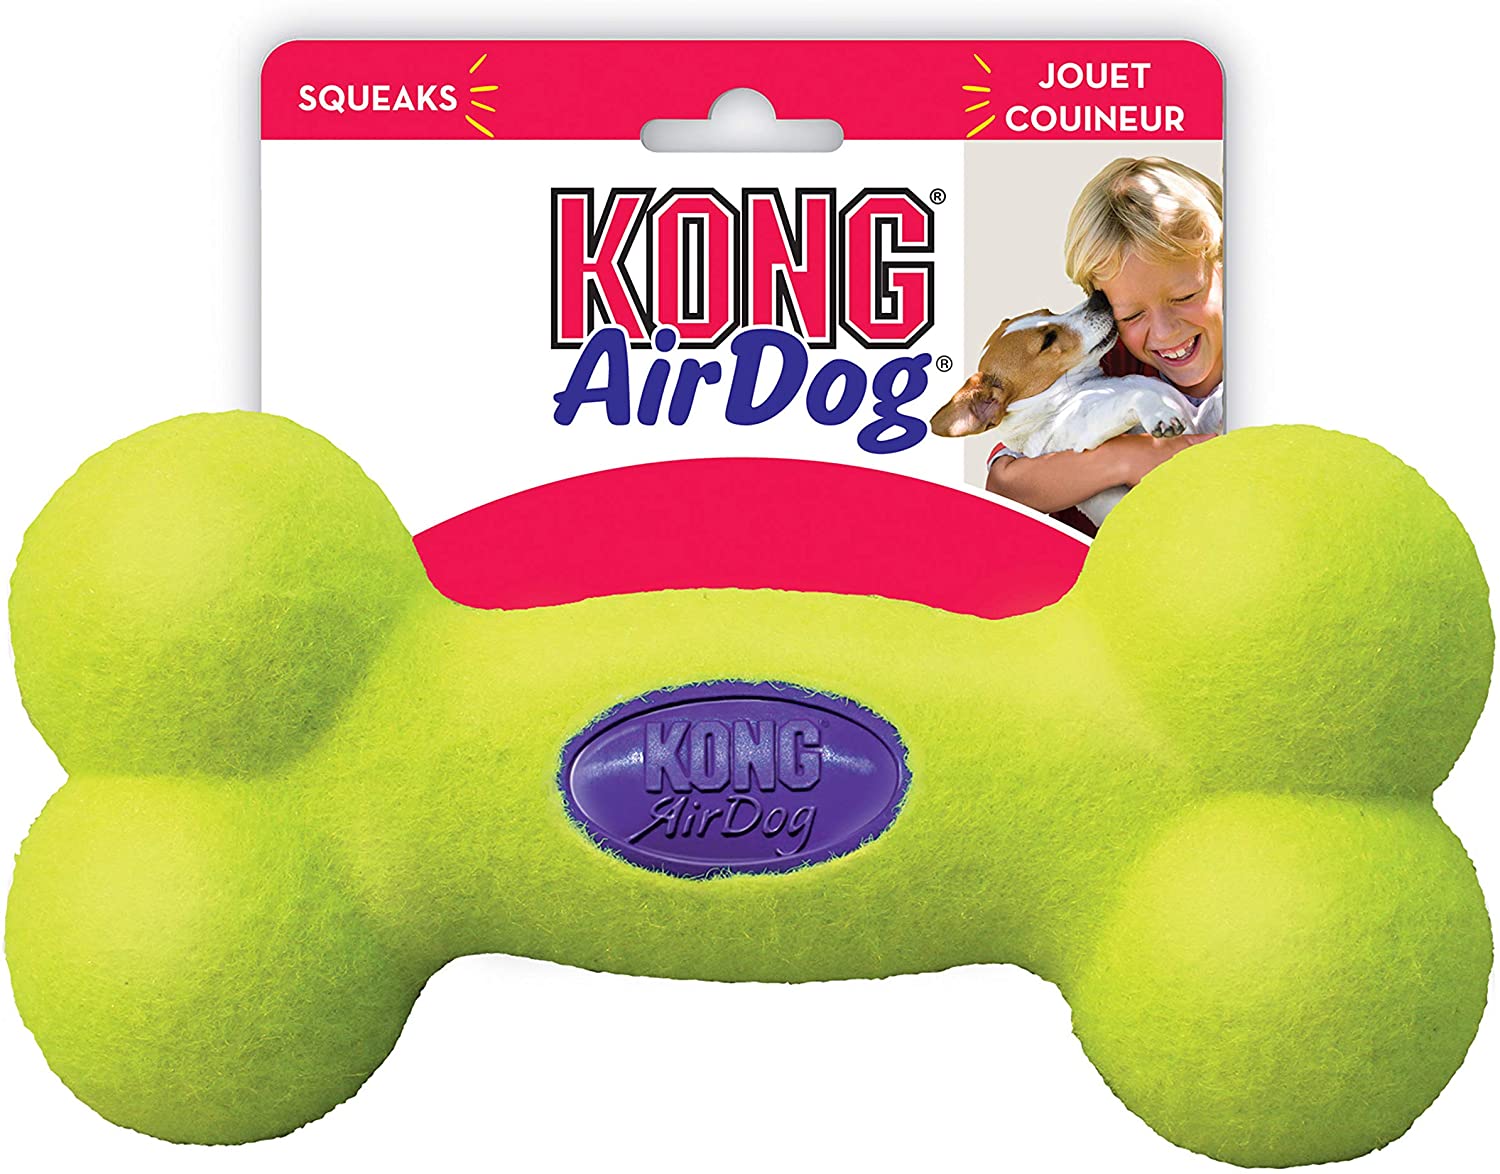  KONG - AirDog® Squeaker Bone - Juguete sonoro y saltarín, tejido pelota de tenis - Raza grande 